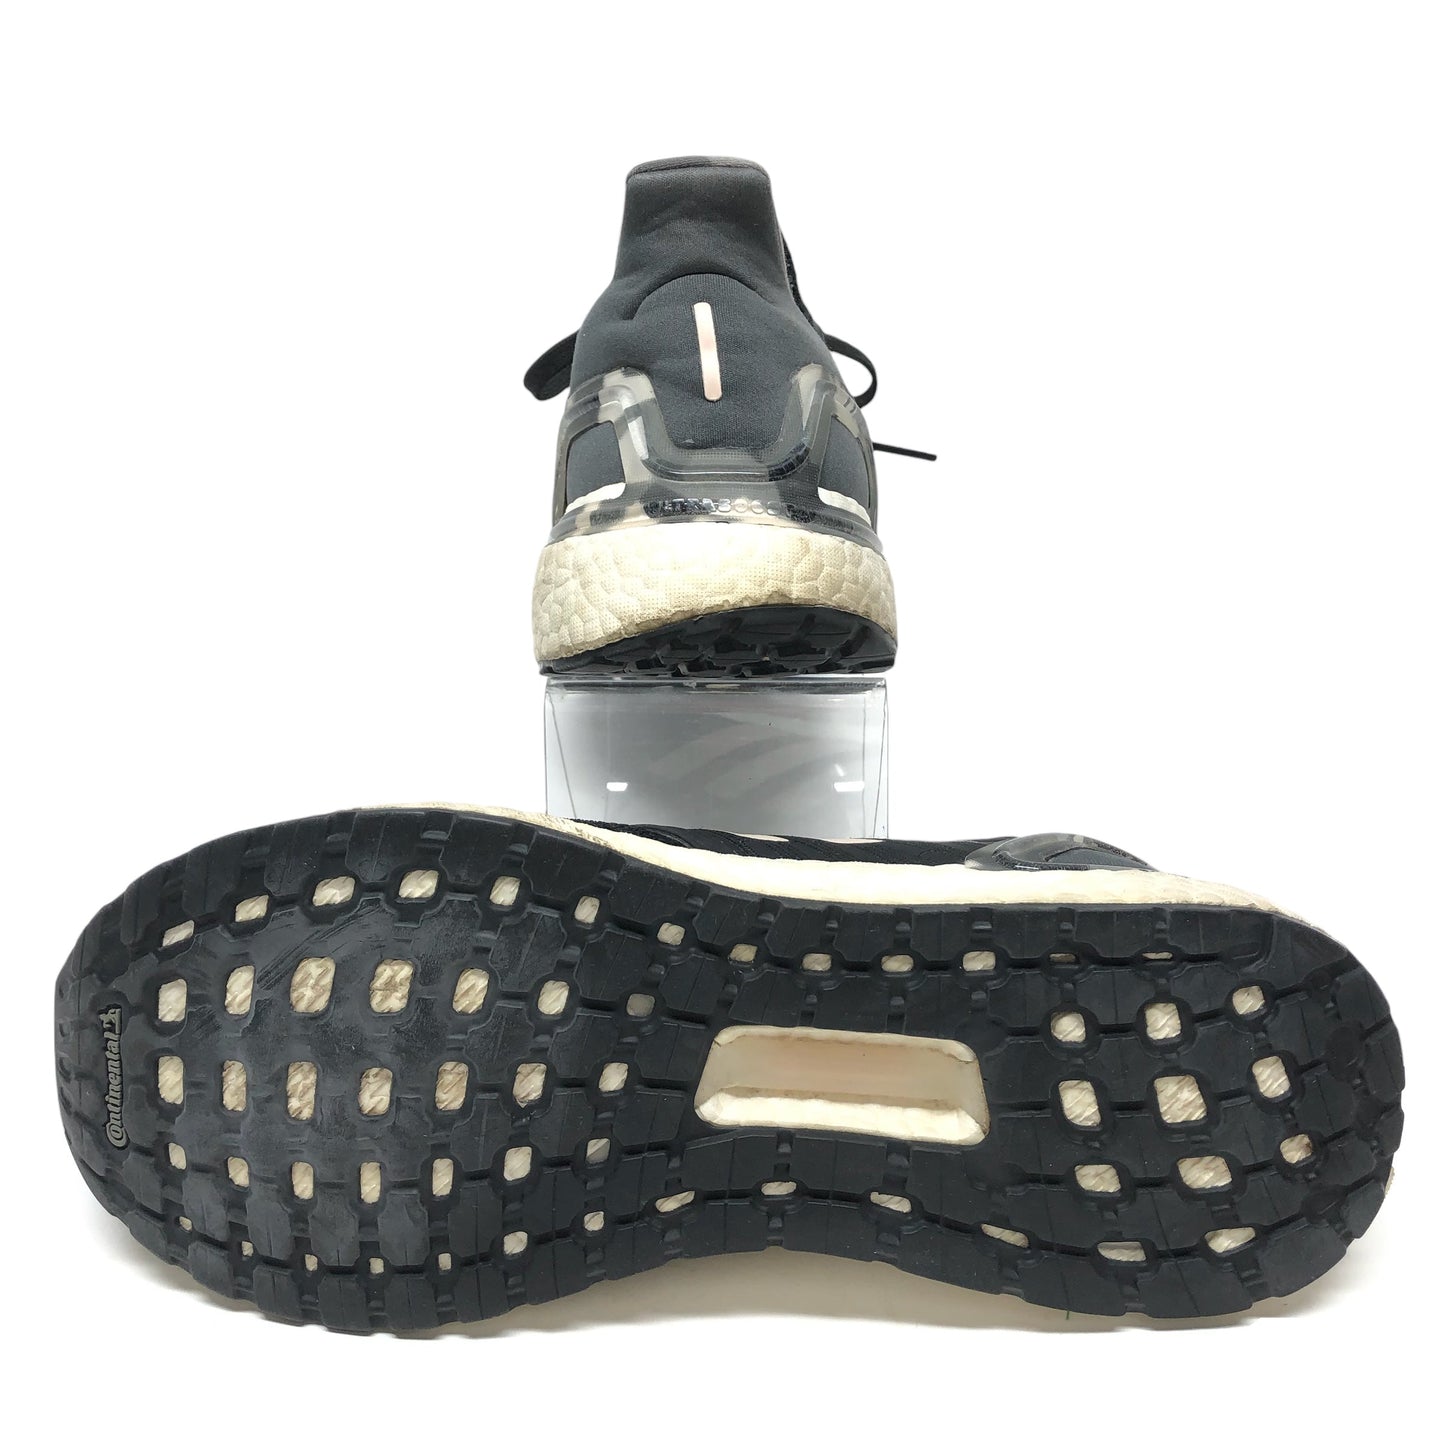 Black & White Shoes Athletic Adidas, Size 9